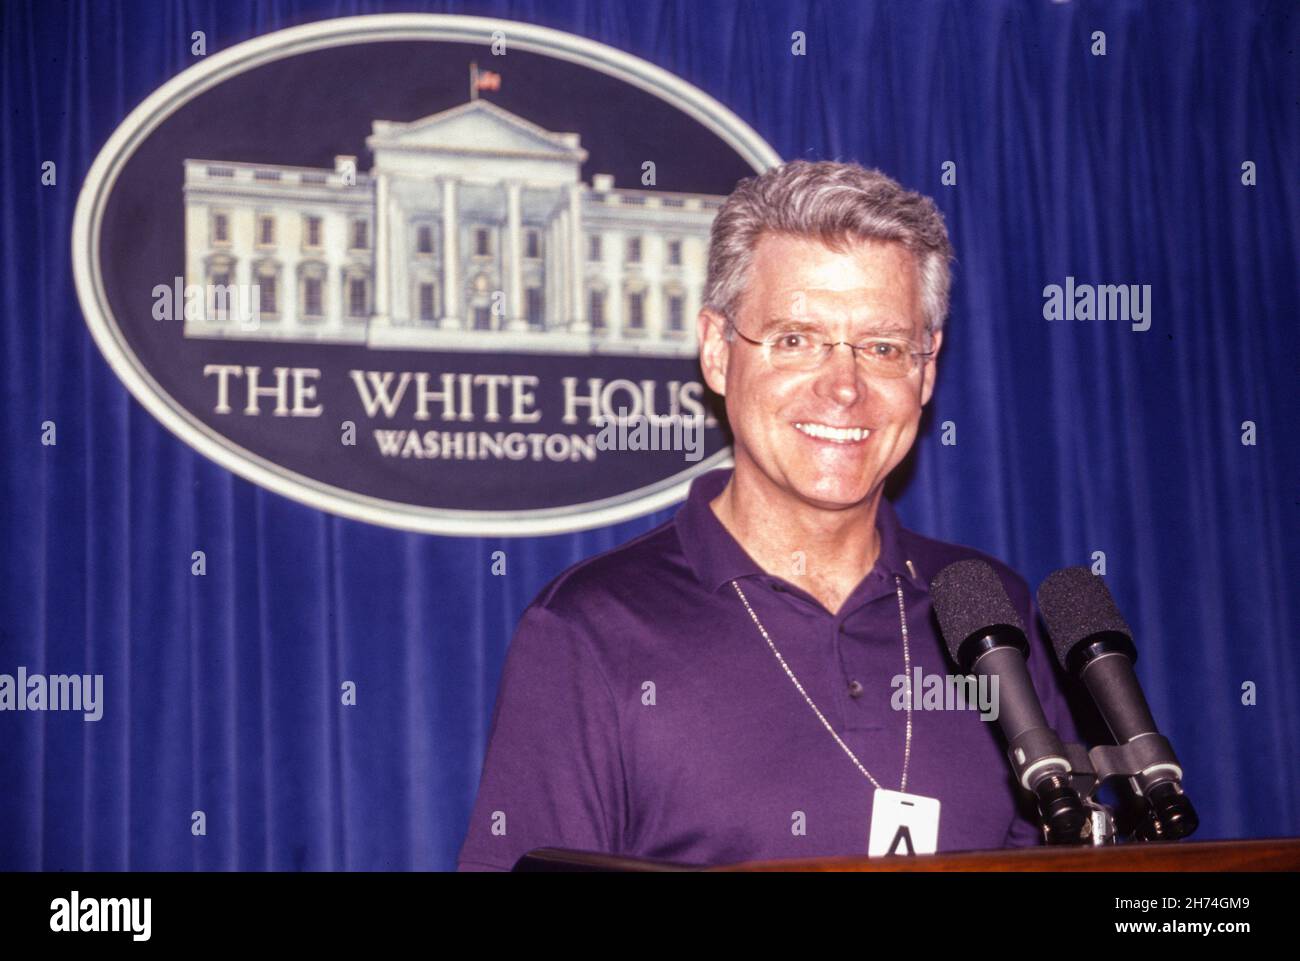 Uomo di mezza età in visita alla Casa Bianca Press Briefing Room Stage, 2003, Washington D. C., USA Foto Stock